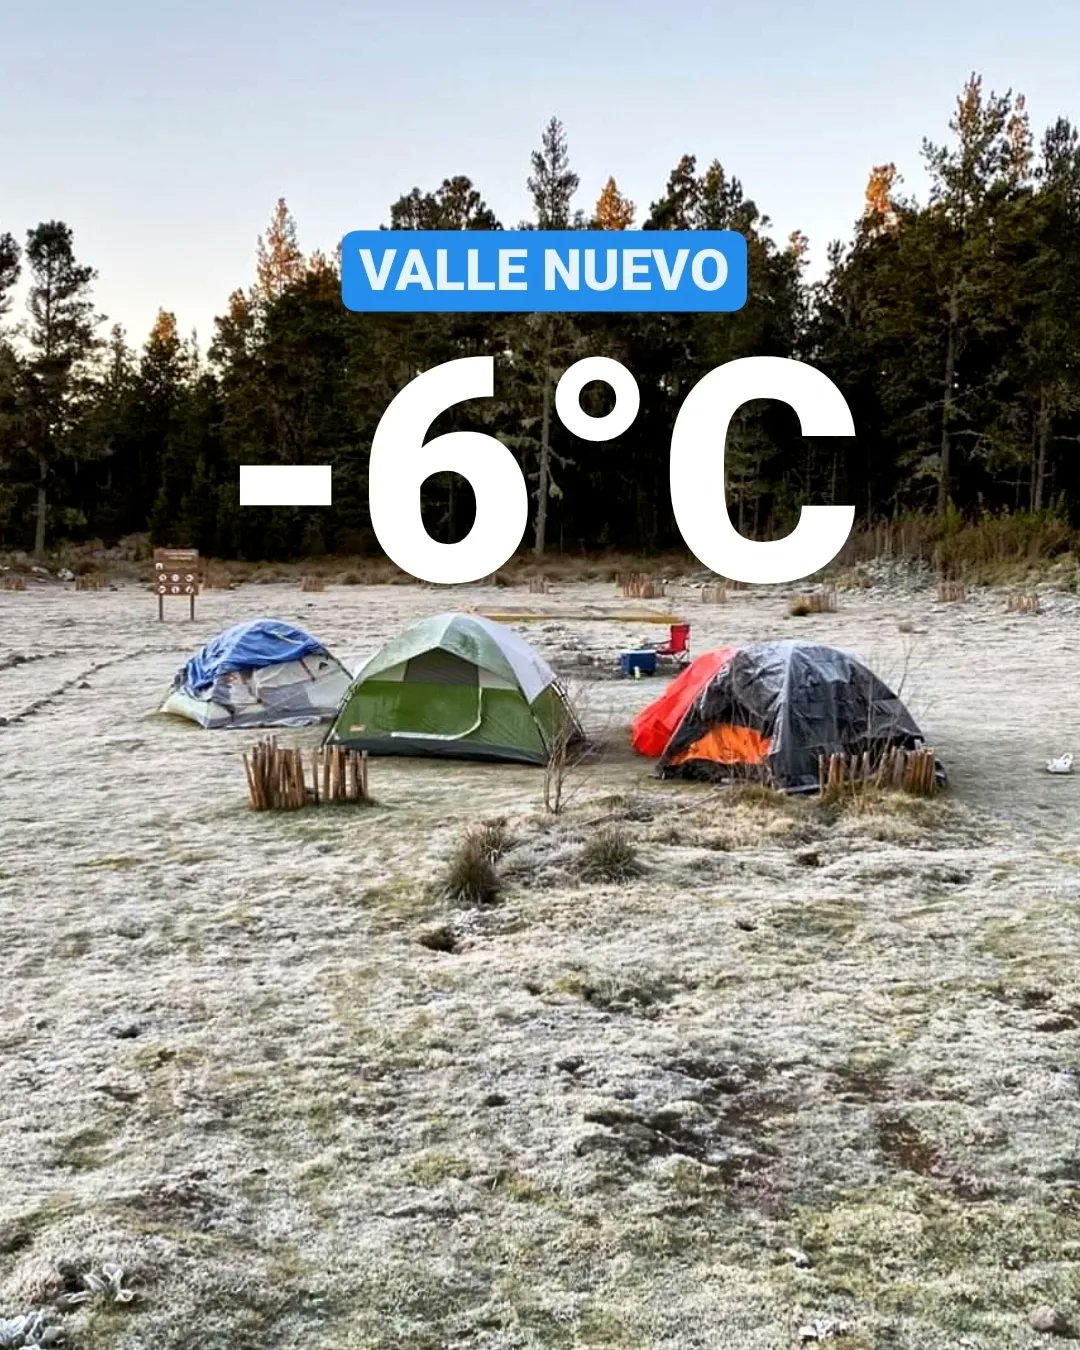 VIDEO: continúan las bajas temperaturas en Valle Nuevo